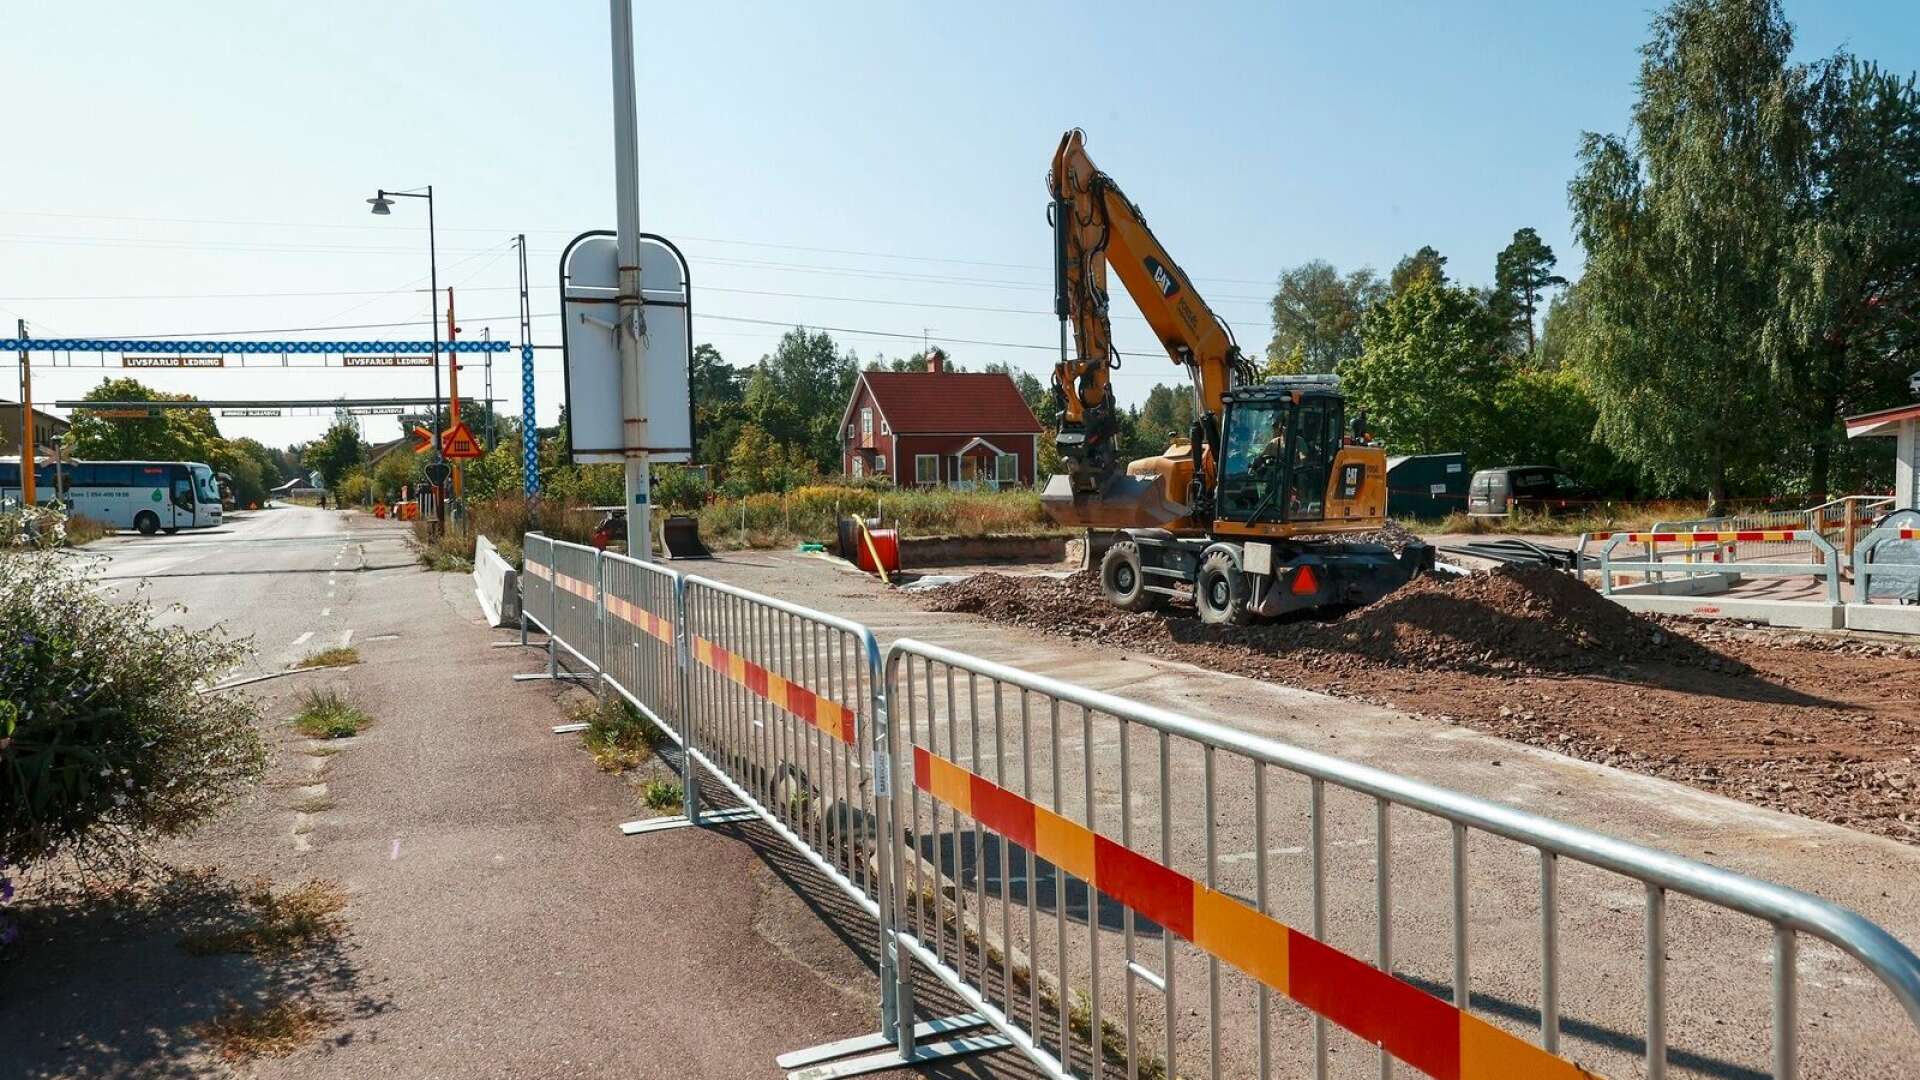 Trafikverkets satsning på ett förlängt mötesspår som skapar bättre tågpendlingsmöjligheter i Väse är en av orsakerna till att ett privat vill skapa ett nytt bostadsområde där.